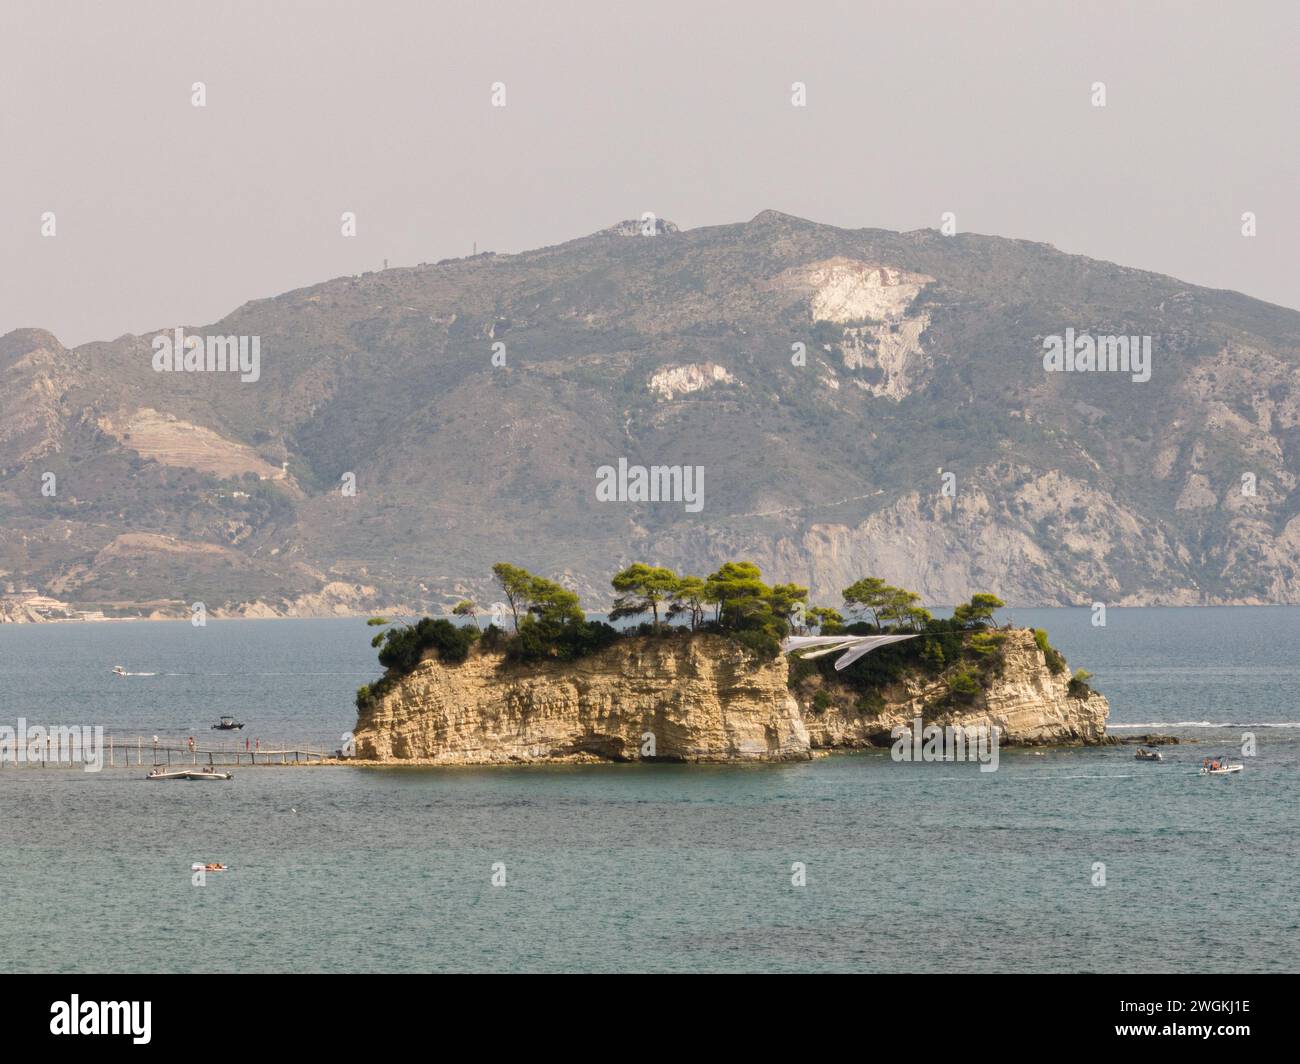 Cameo Wedding Island à Zakynthos, Grèce. Île grecque avec pont en bois. Île de Cameo en Grèce. Banque D'Images